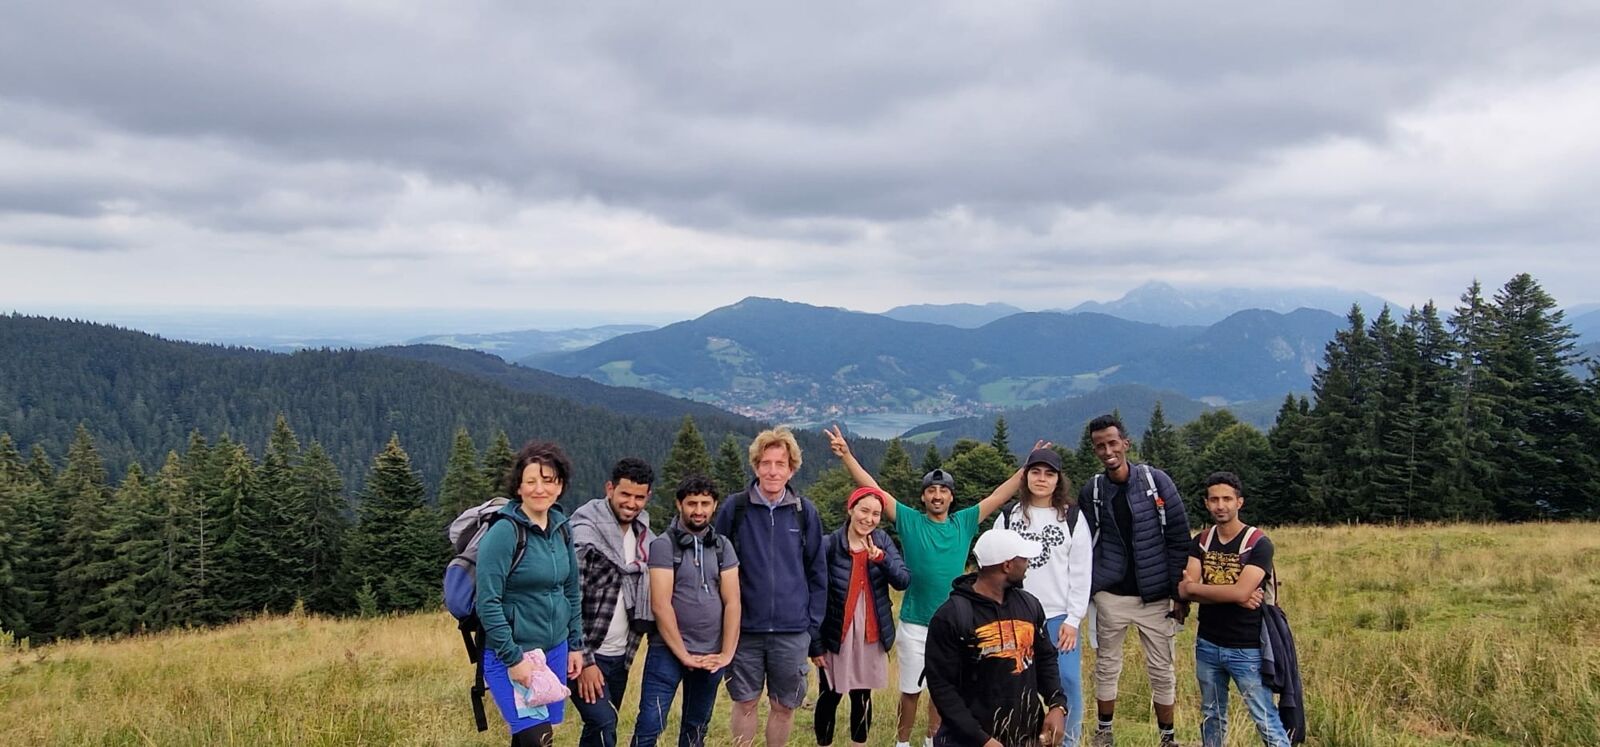 Hier sieht man ein Gruppenbild von wandernden Personen in den Bergen.